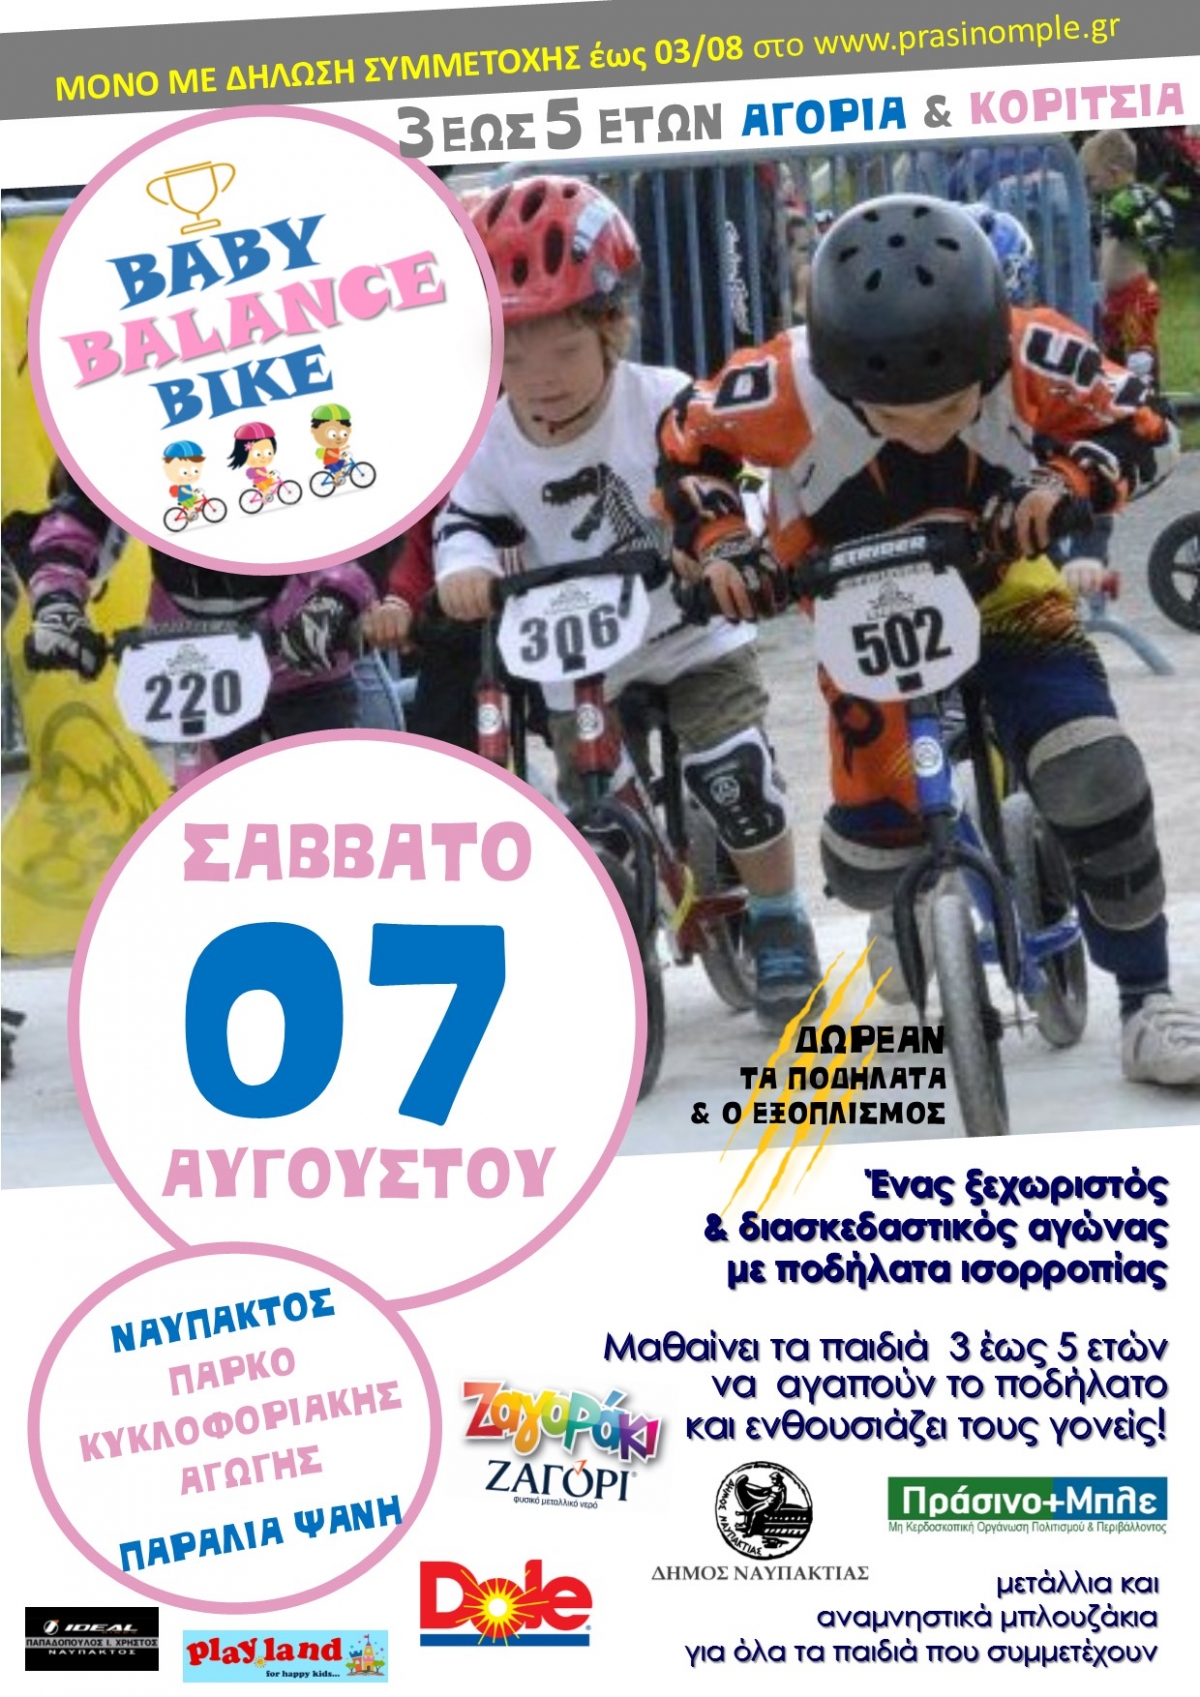 BABY BALANCE BIKE:  Ένας ξεχωριστός ποδηλατικός “αγώνας” στην Ναύπακτο (Σαβ 7/8/2021)